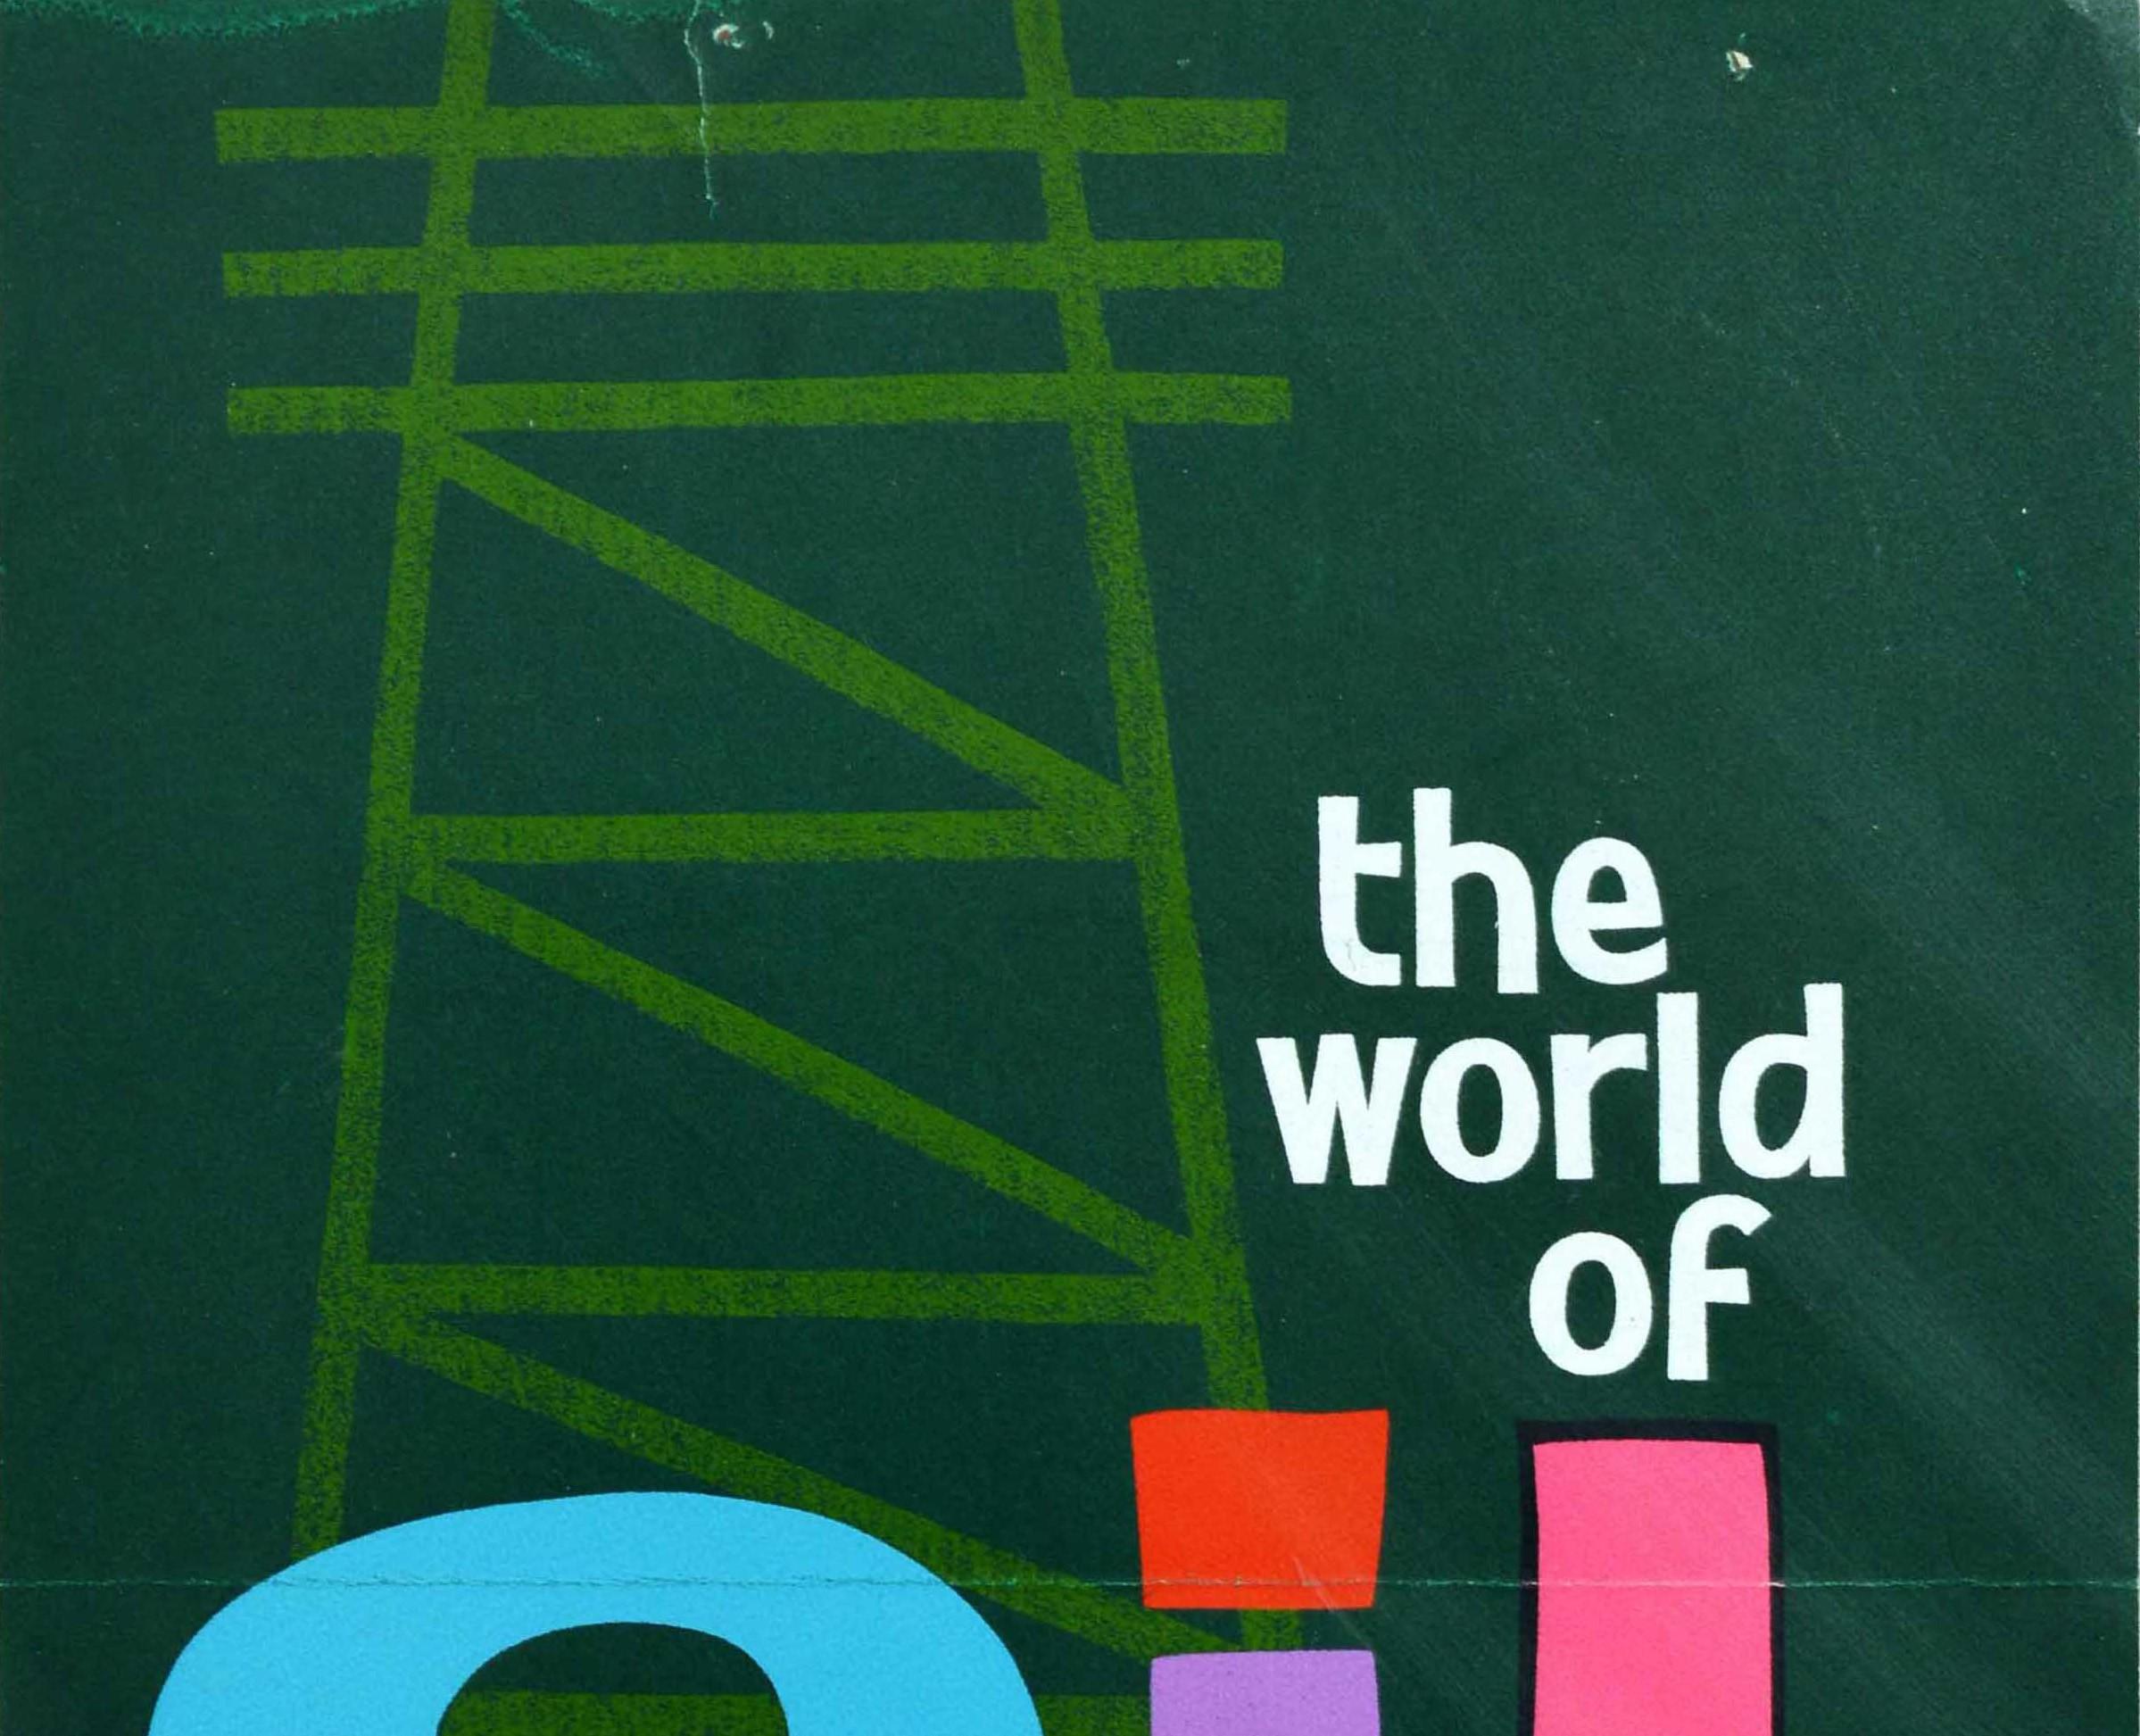 Original-Werbeplakat für The World of Oil Eine Ausstellung in der Victoria Art Gallery in der Bridge Street in Bath vom 24. Februar bis 17. März 1962 mit einem farbenfrohen grafischen Design, das die Stützstruktur eines Bohrturms in Grün vor einem